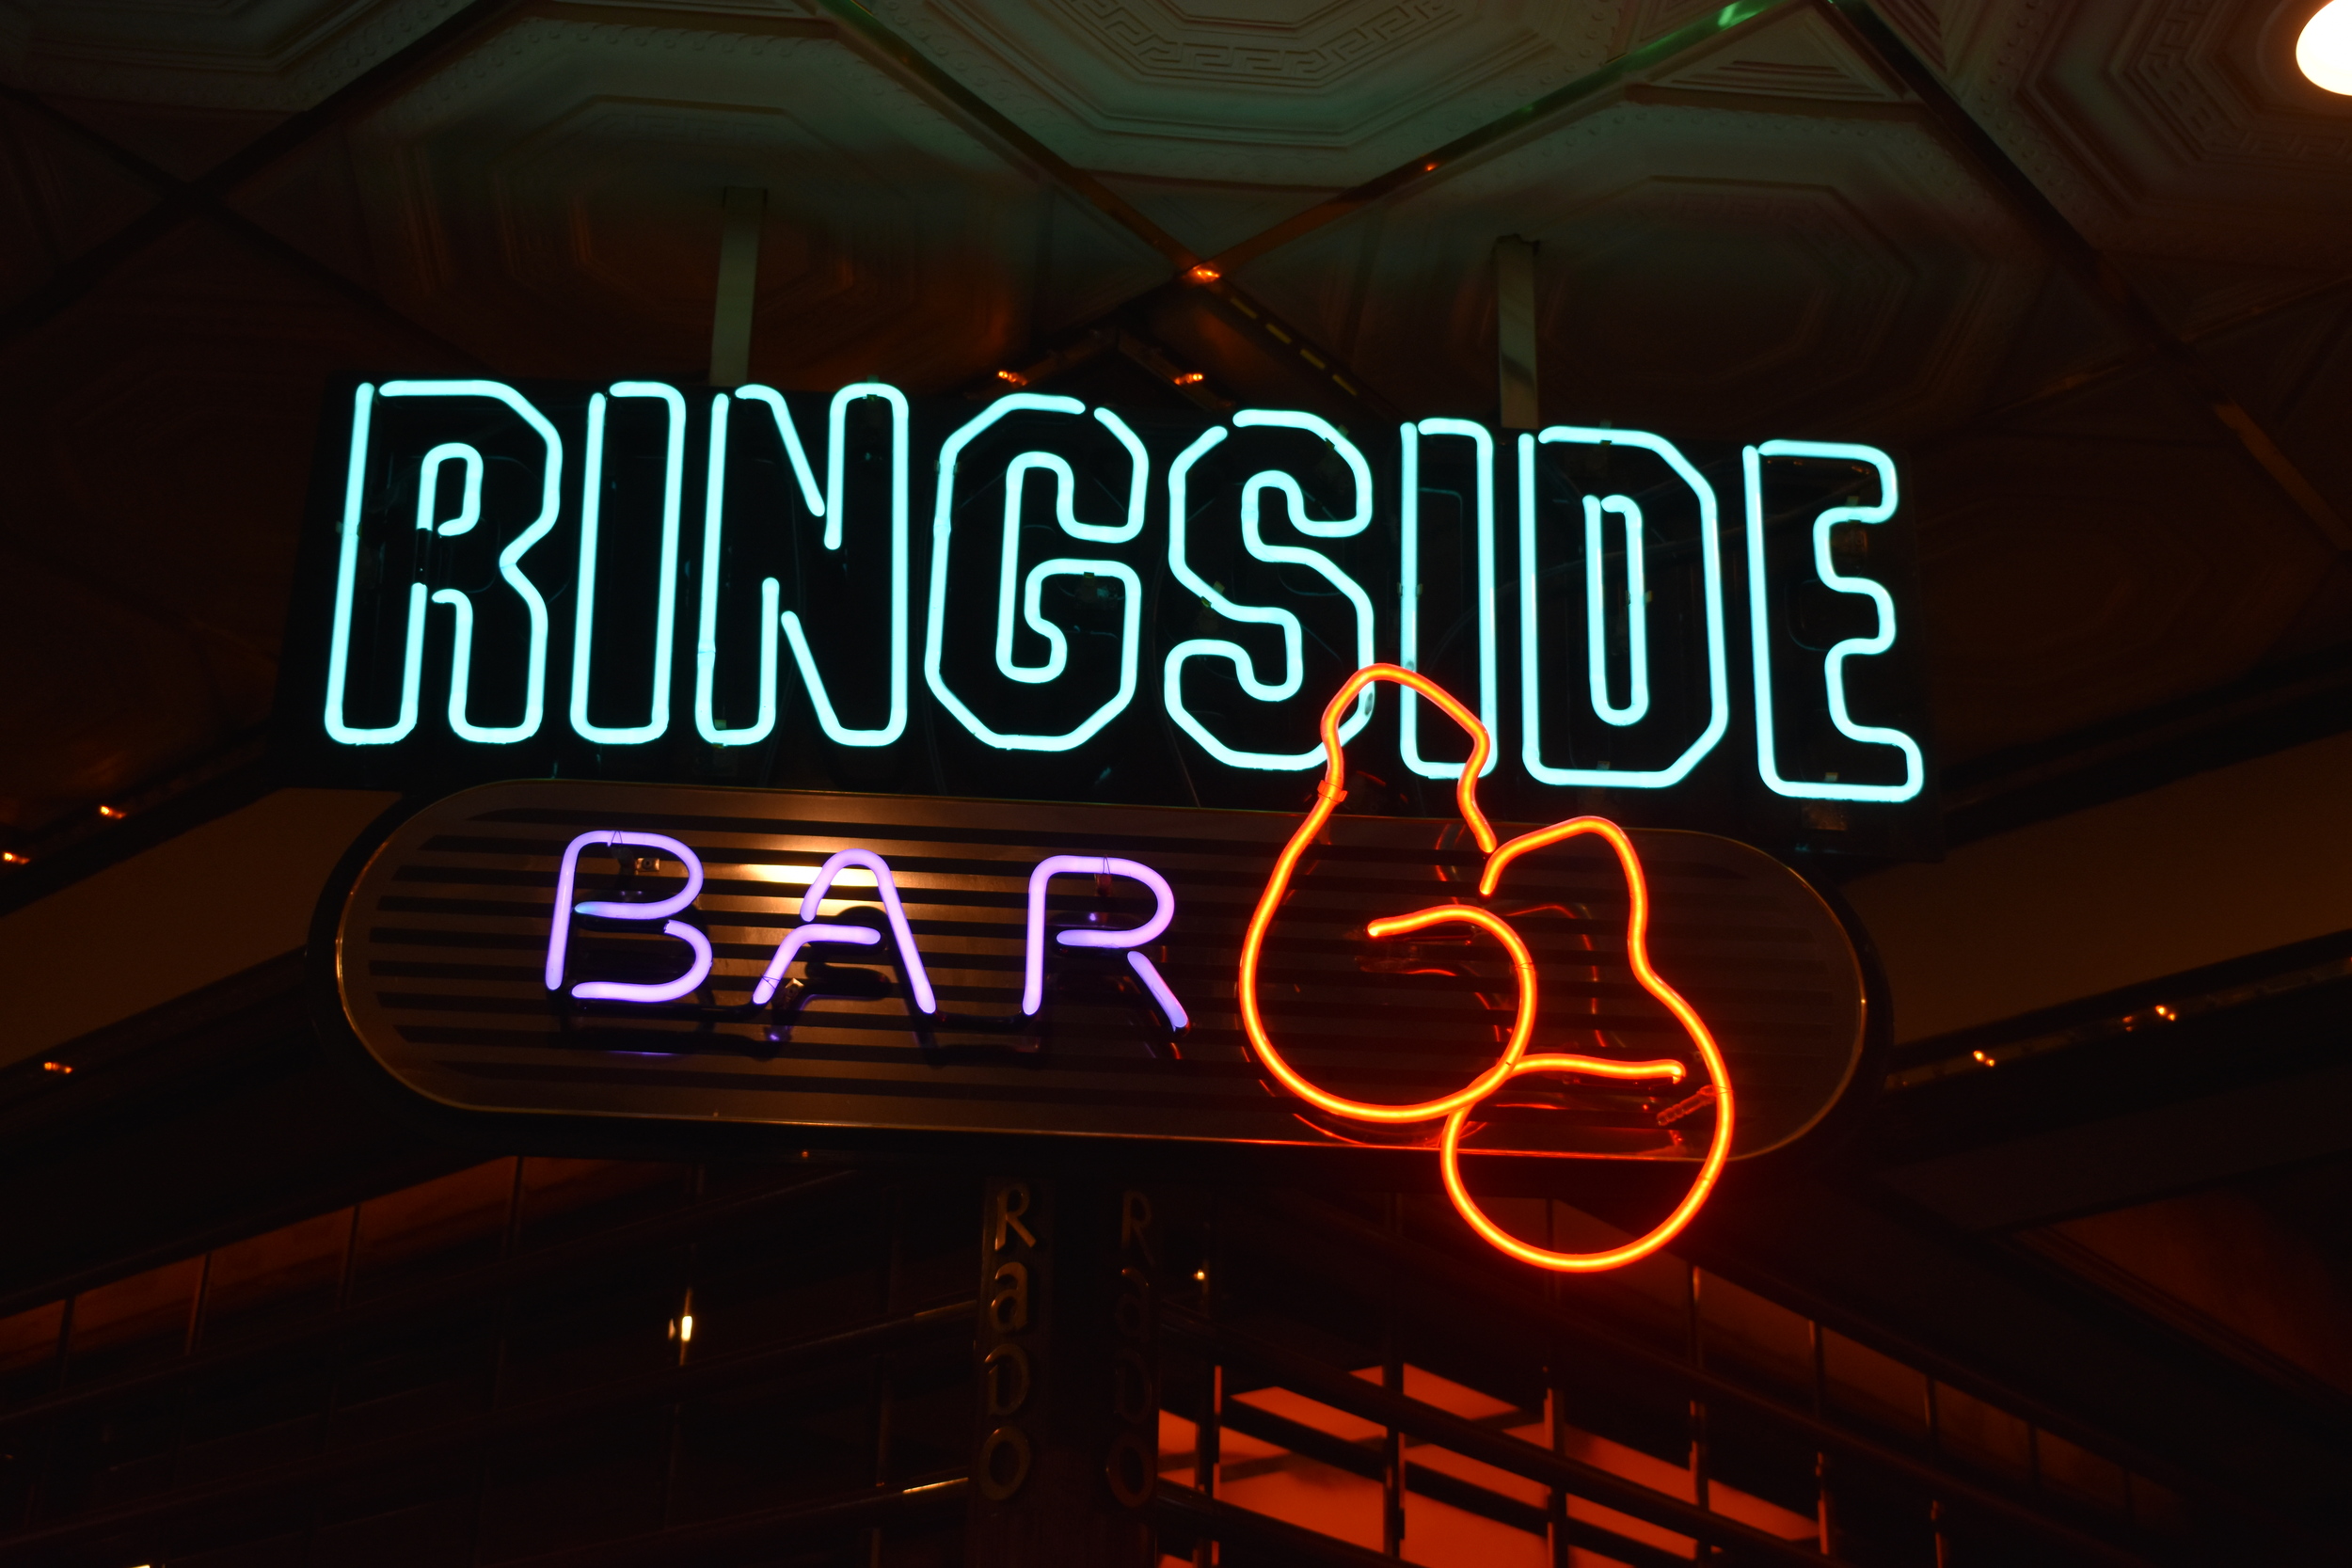 Eldorado's Ringside Bar hanging sign, Reno, Nevada